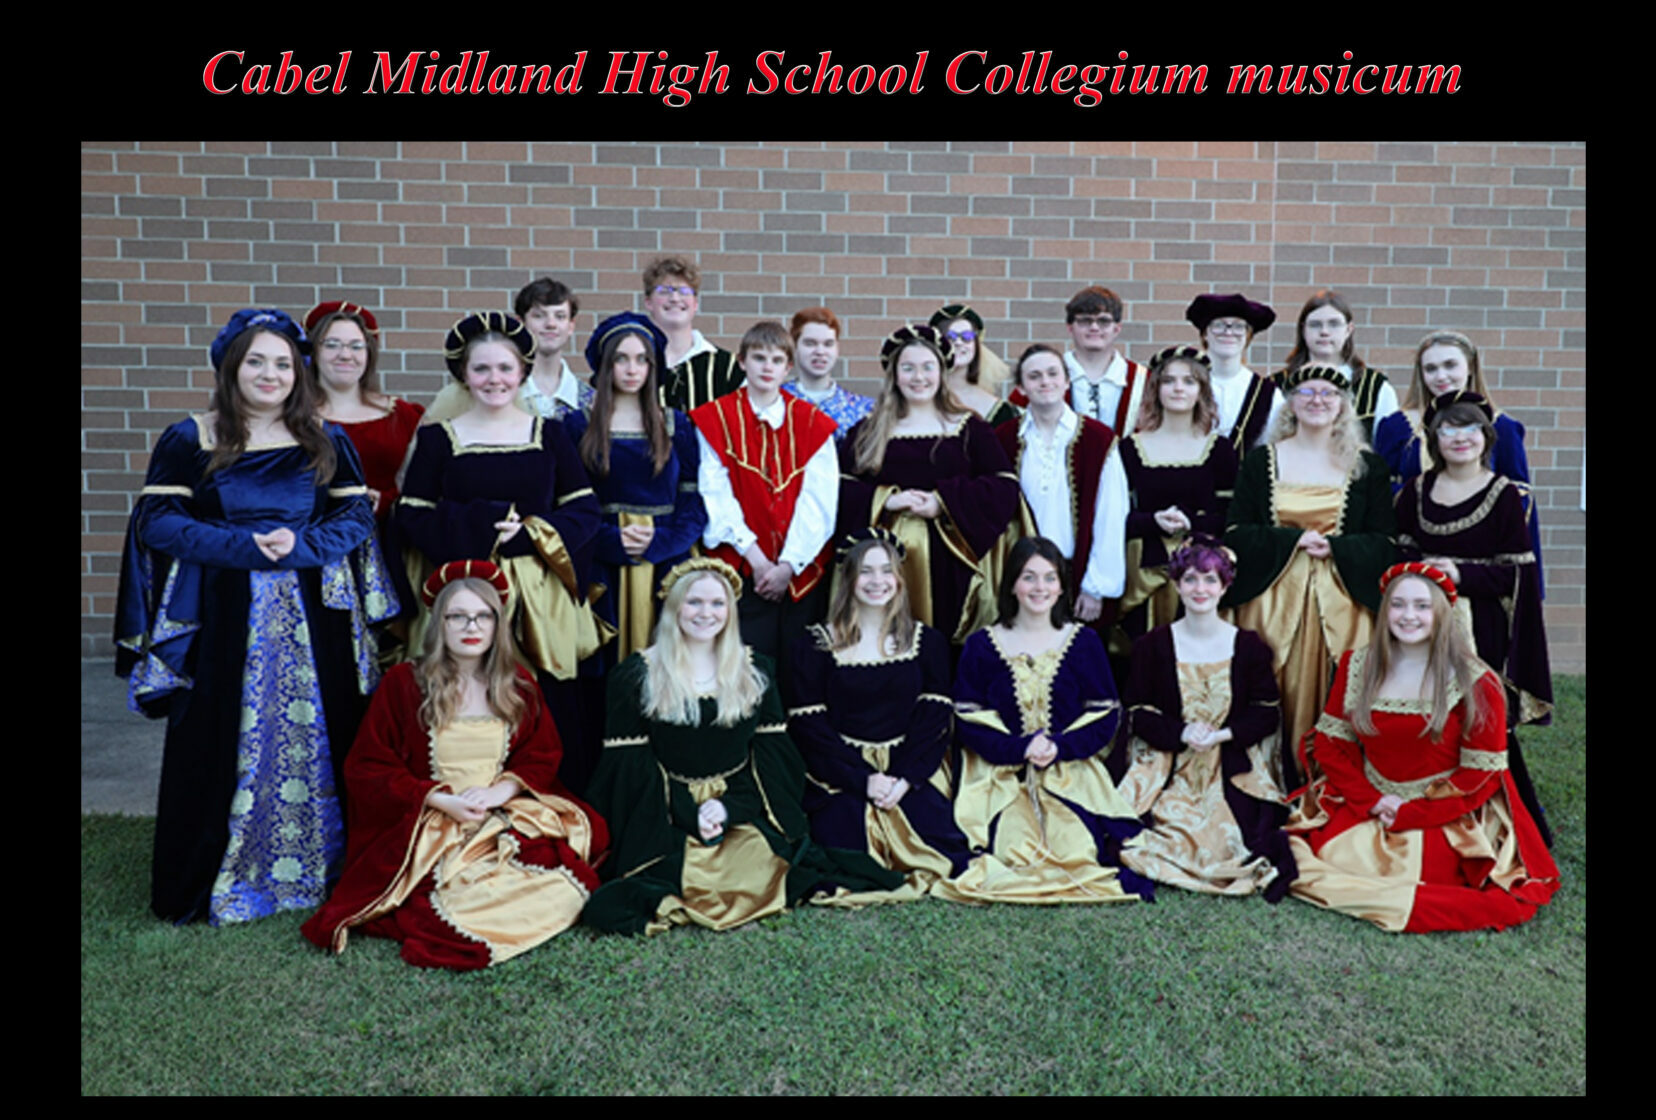 Cabell Midland High School Collegium musicum